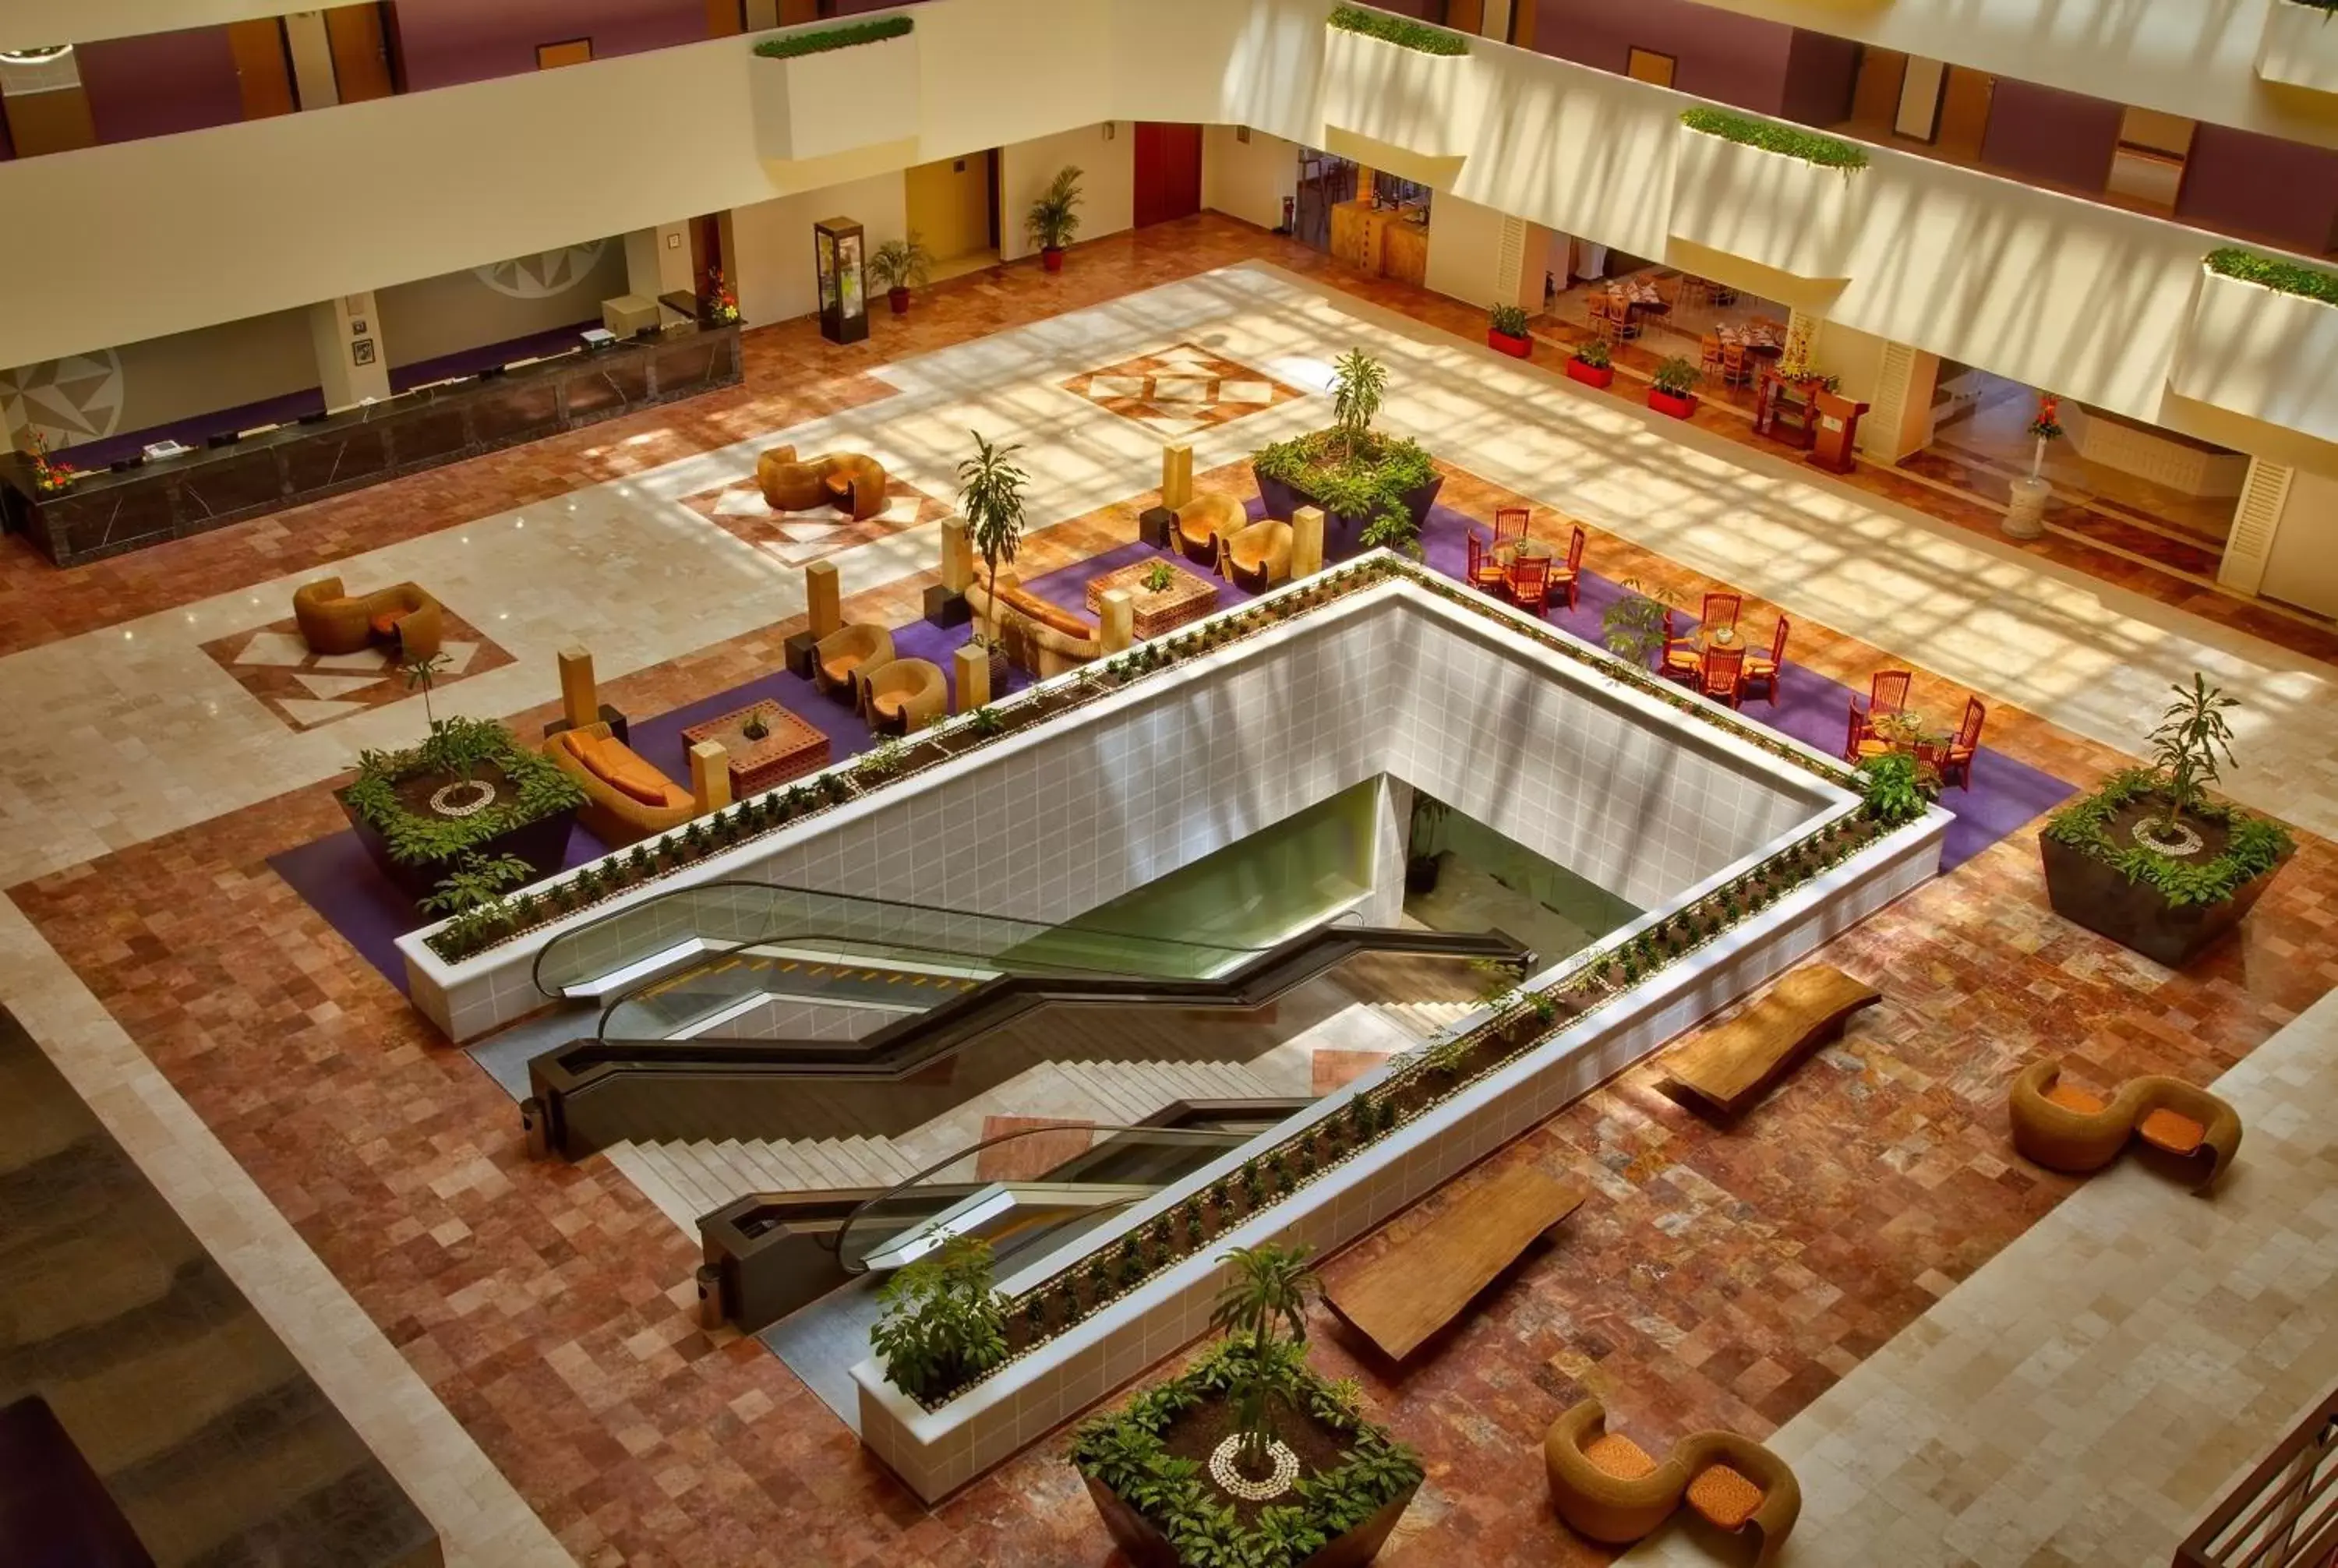 Lobby or reception in Galeria Plaza Veracruz By Brisas